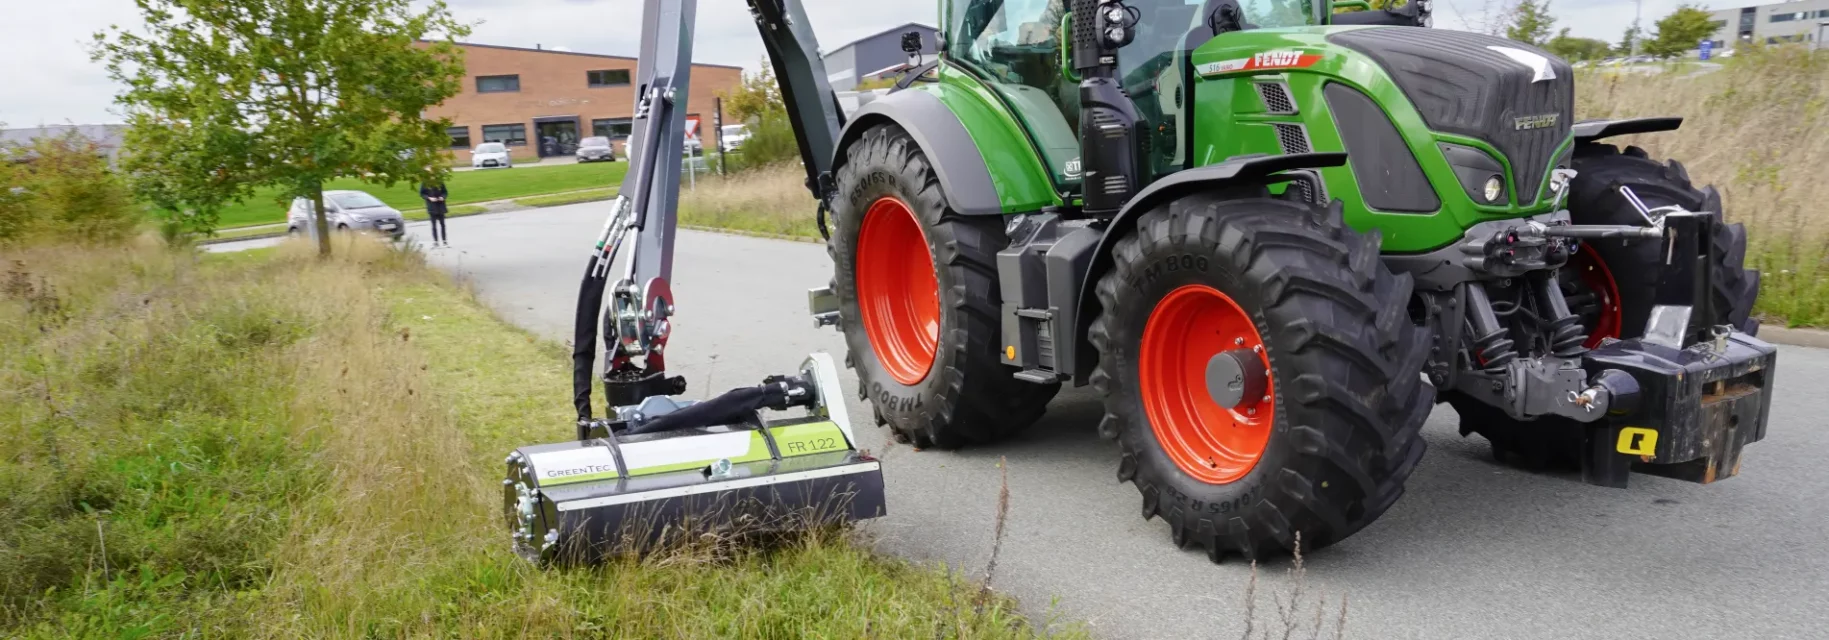 Hydraulisk slagleklipper monteret på traktor